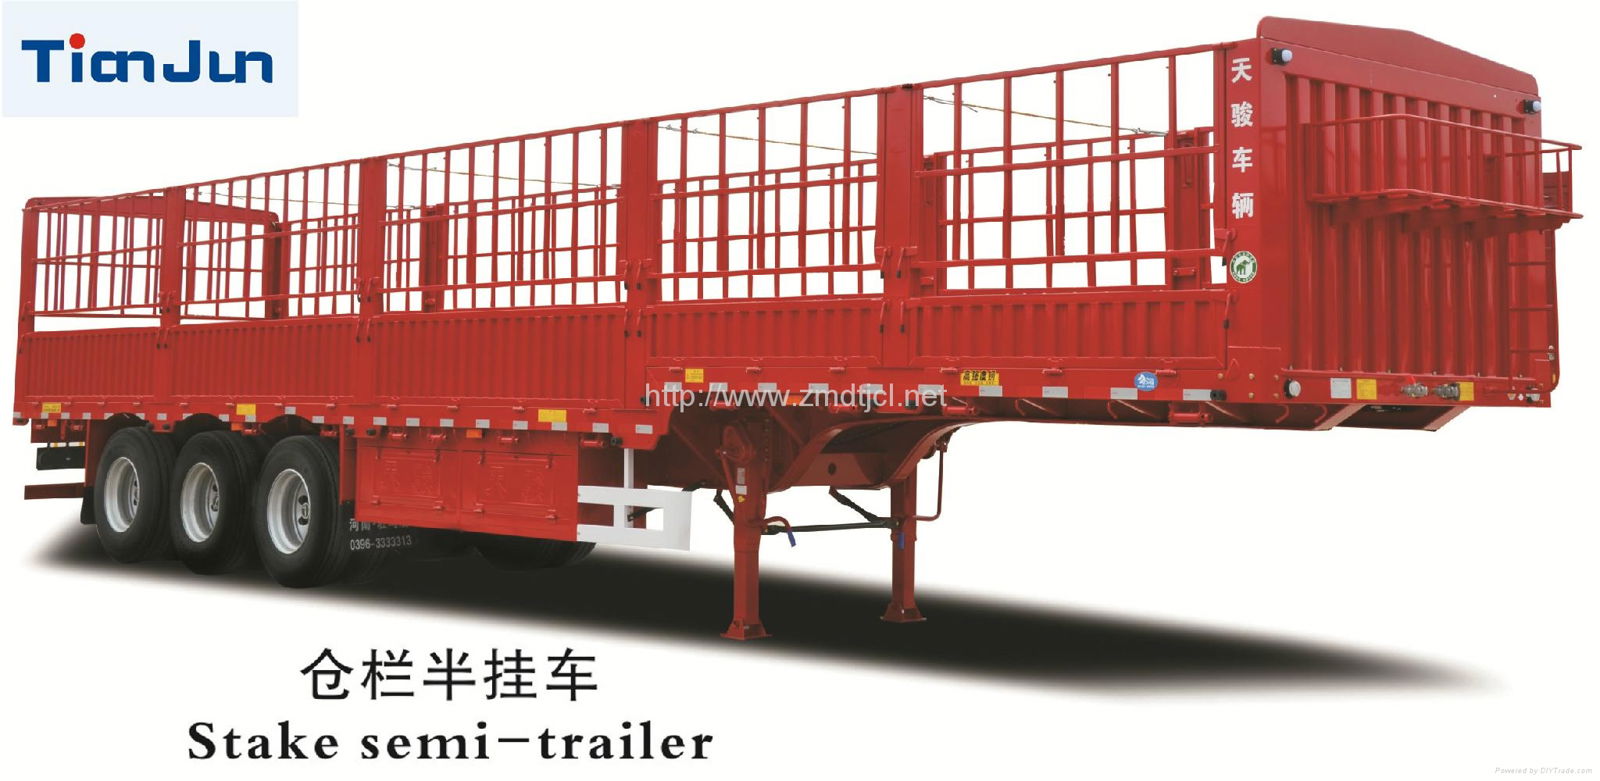 Semi trailer 